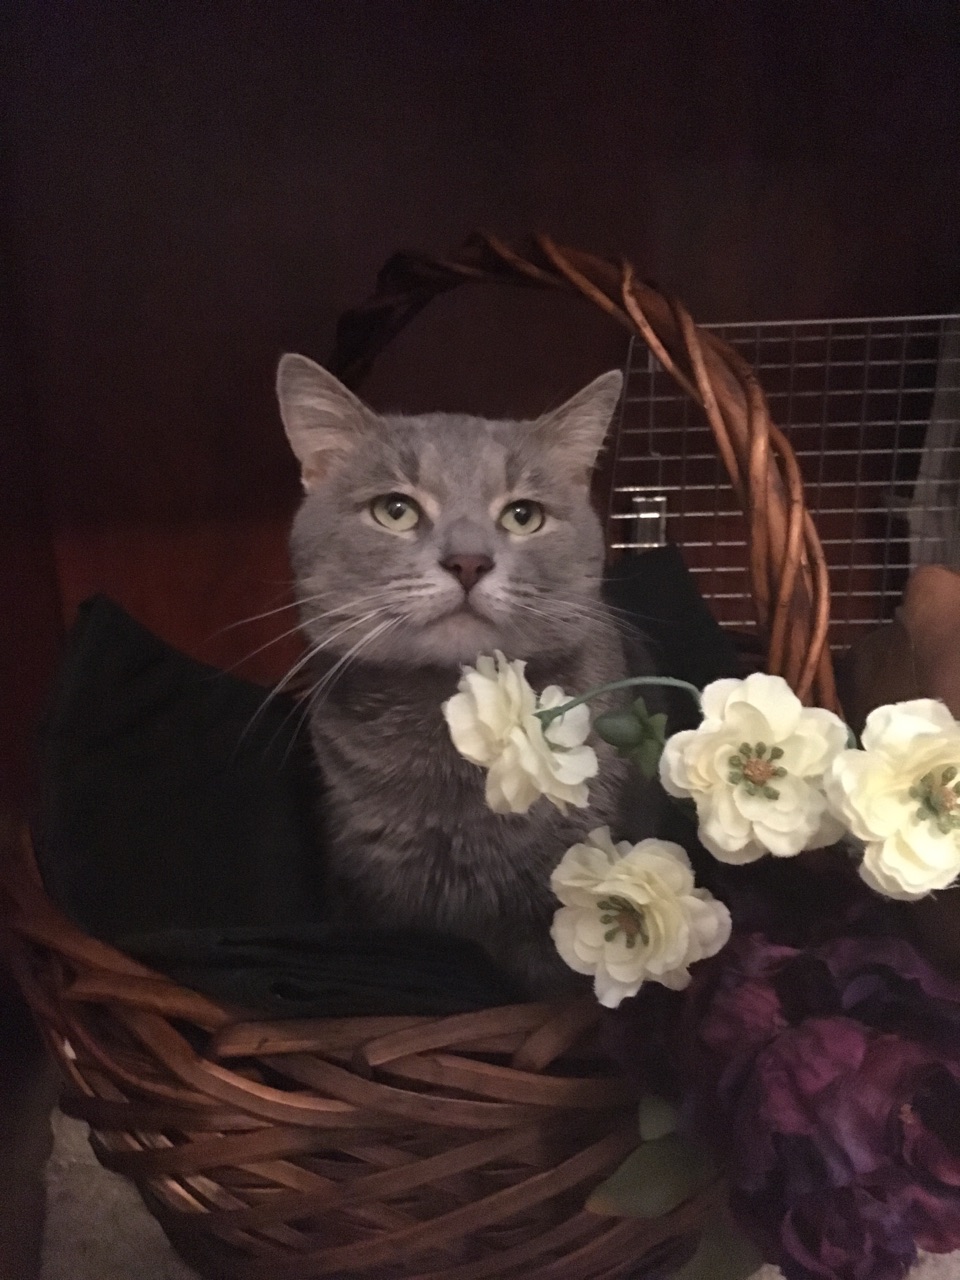 Gray kitten in basket with flowers.